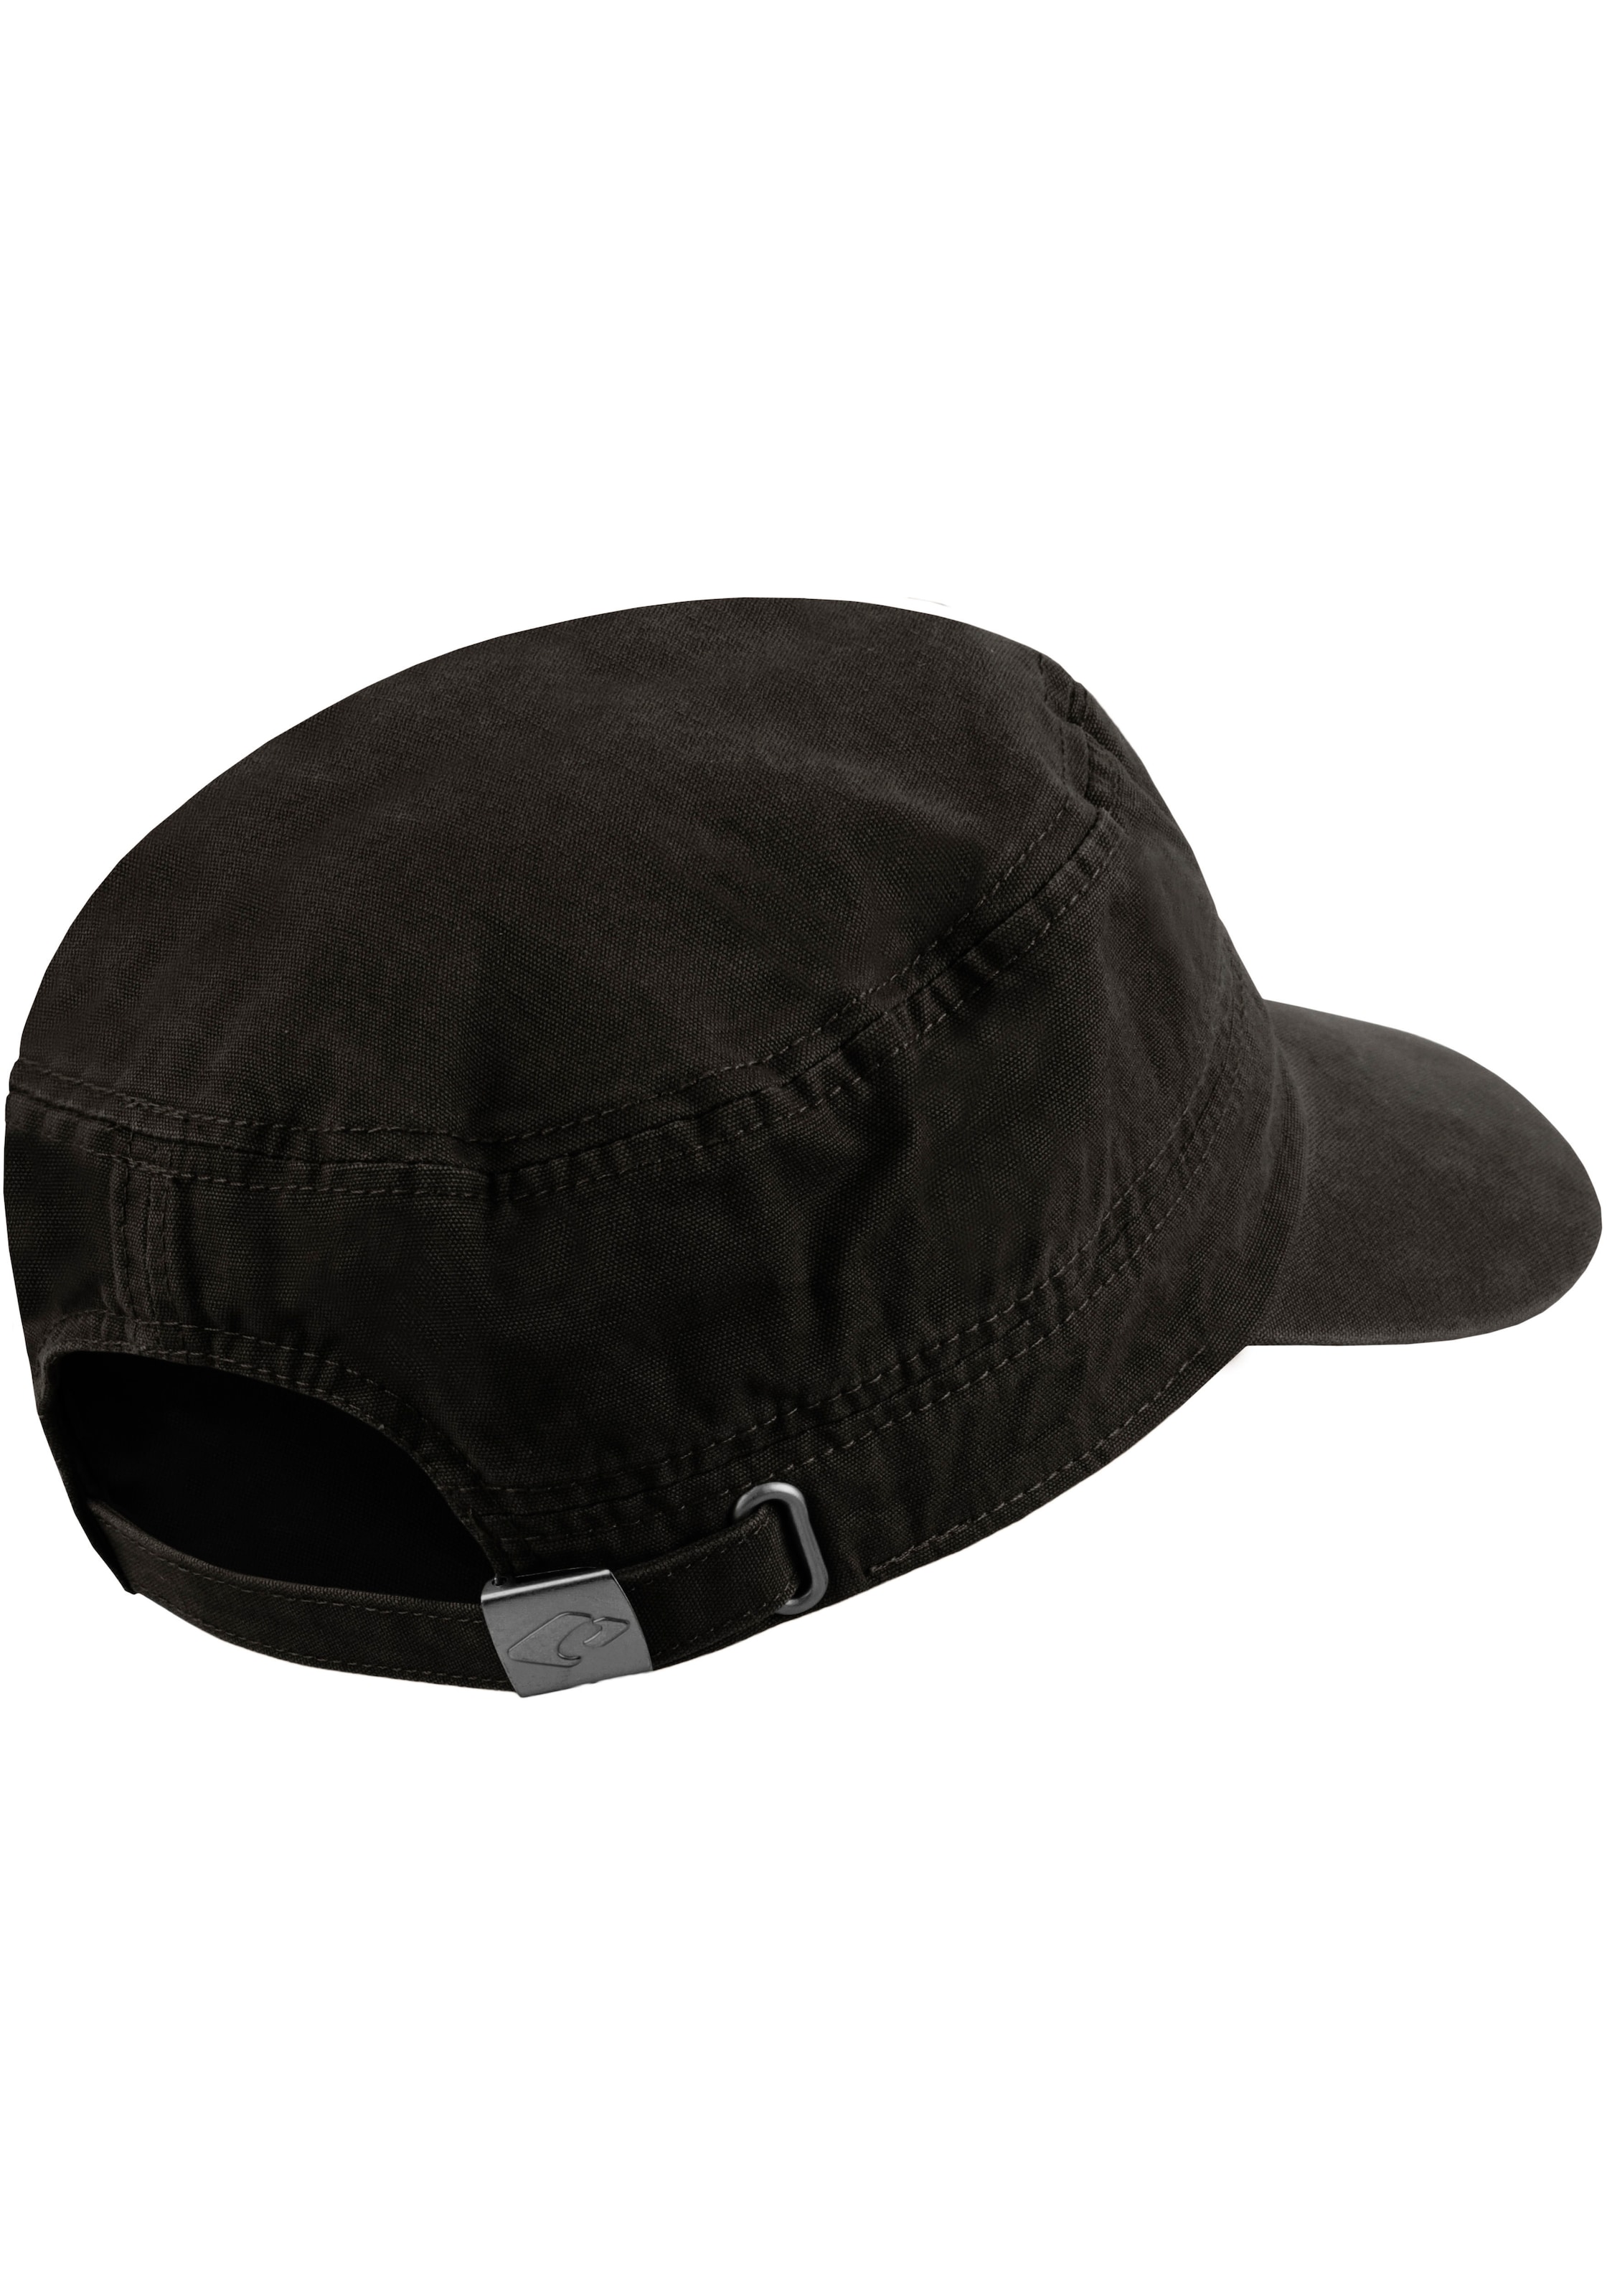 chillouts Army Hat«, »Dublin bestellen Cap im Mililtary-Style Cap